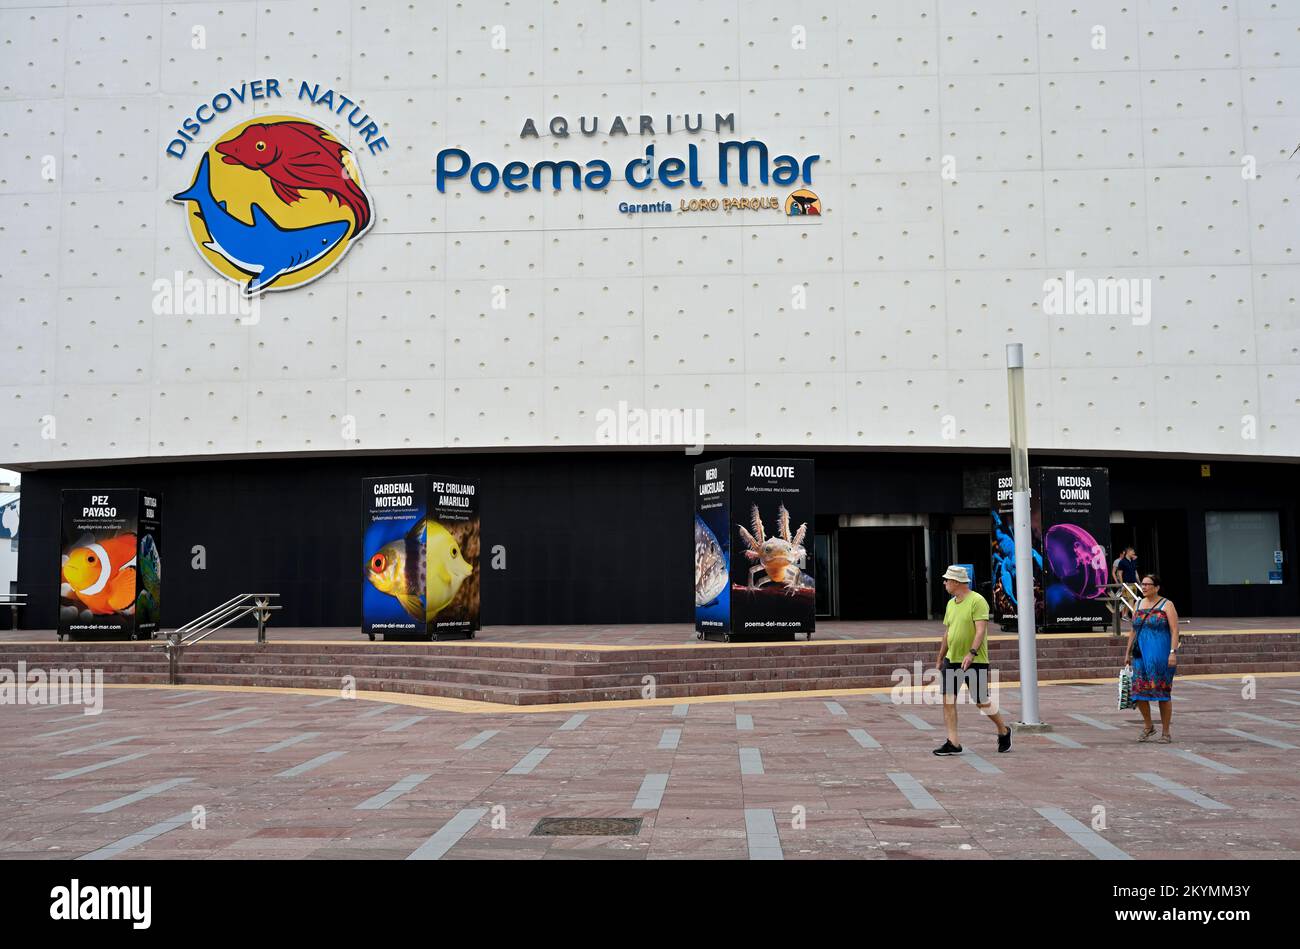 Aquarium Poema del Mar Las Palmas, Gran Canaria Banque D'Images